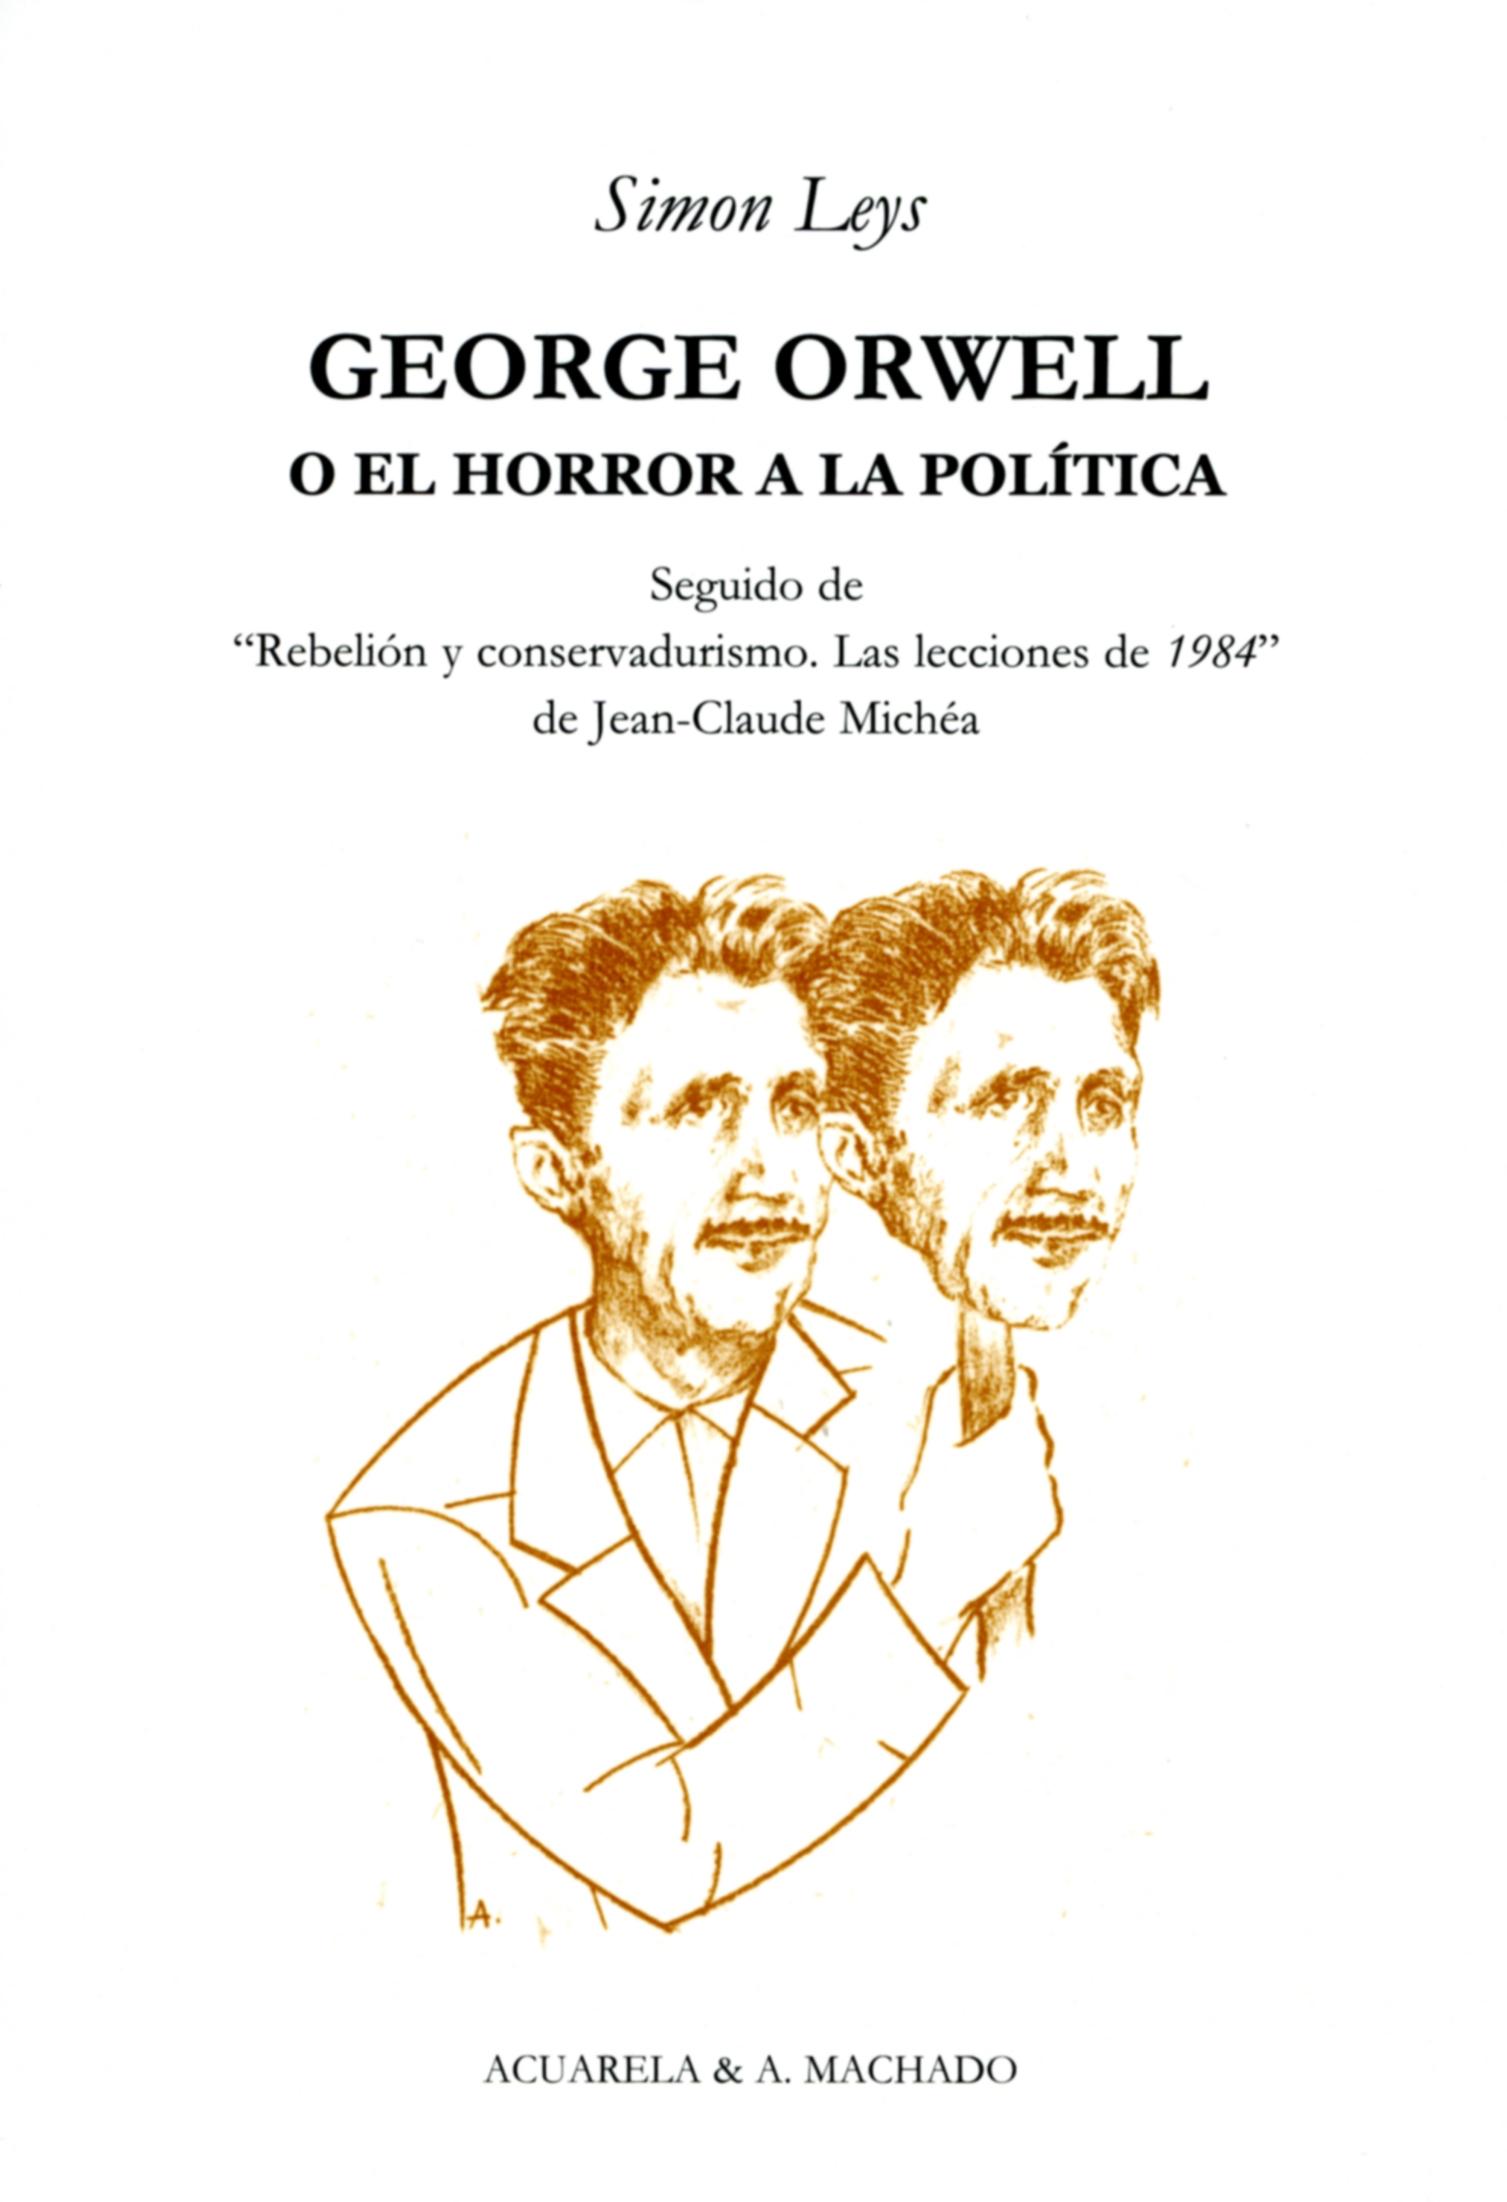 George Orwell "O el Horror a la Política". 